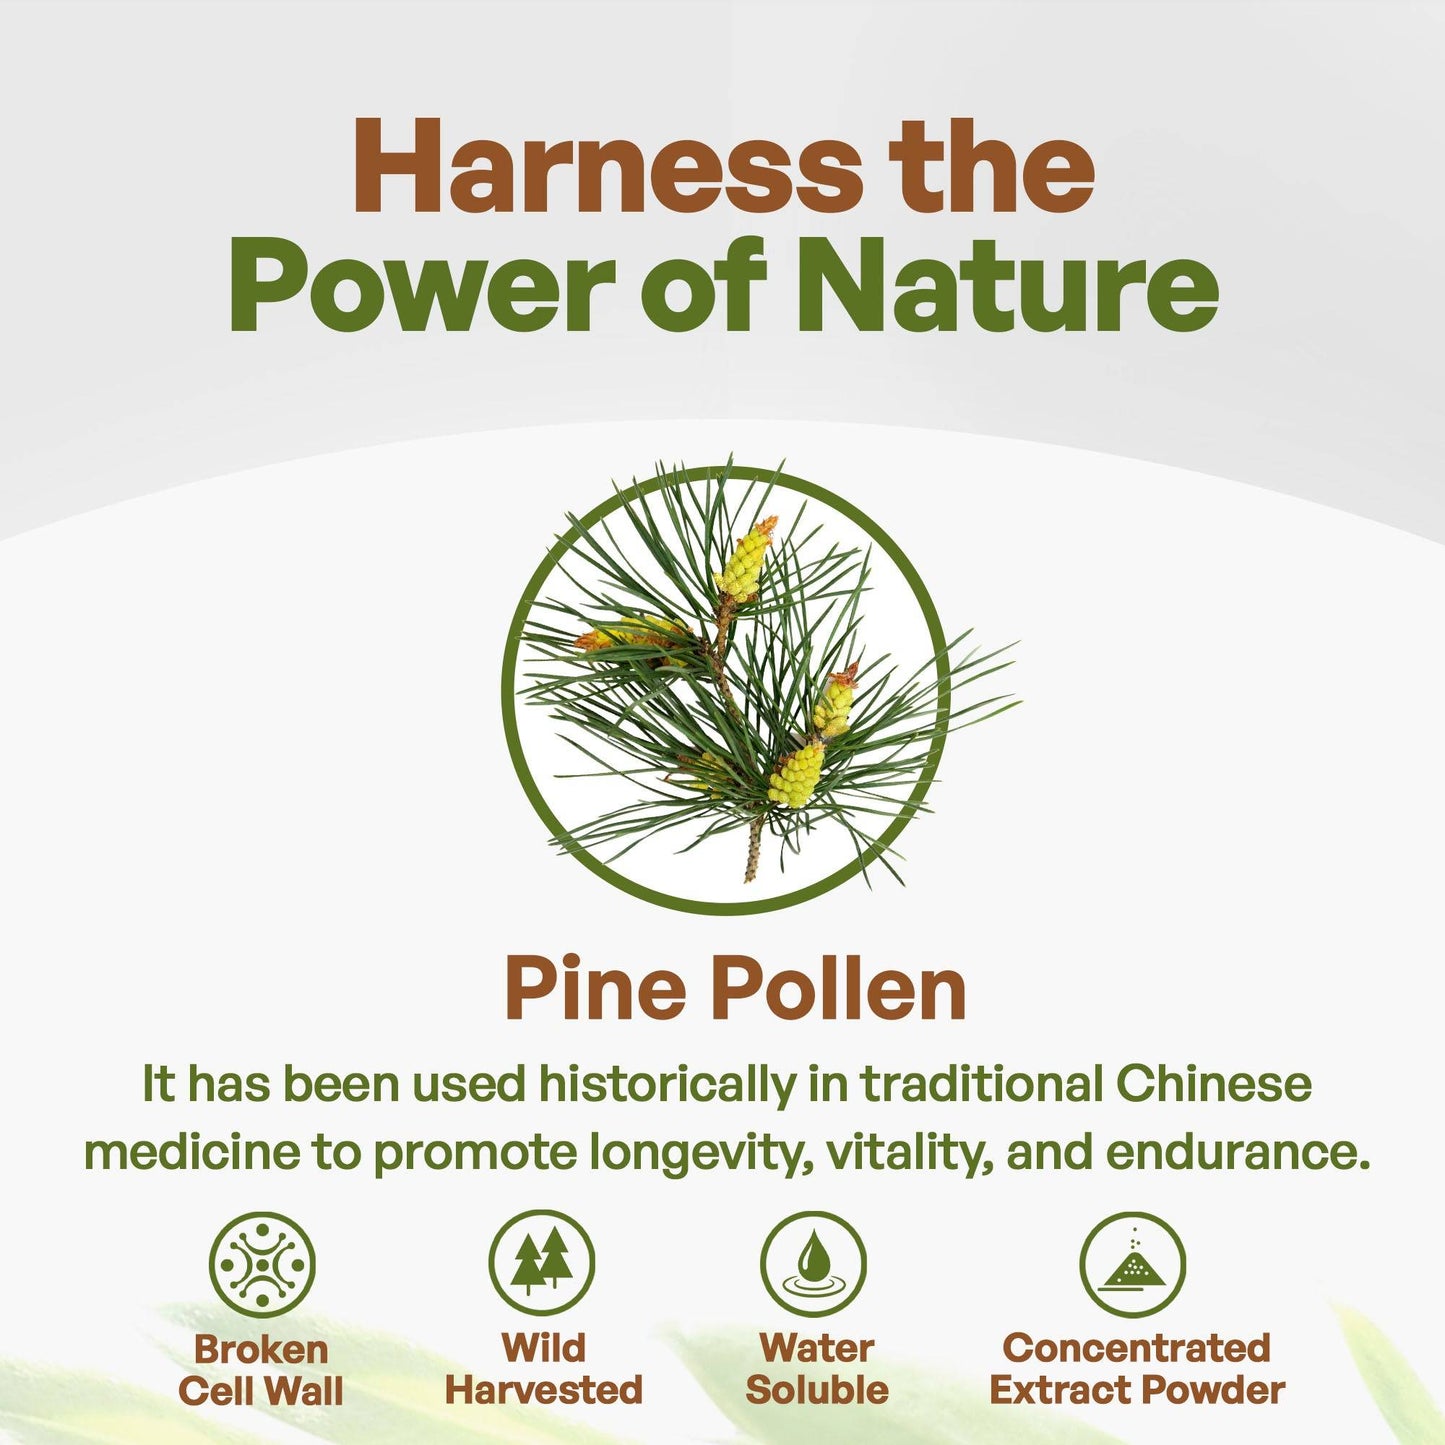 
                  
                    Pine Pollen Powder Cracked Cell 1lb Herbs & Tea Go Nutra Go Nutra Buy Pure Pine Pollen Powder Now!
                  
                